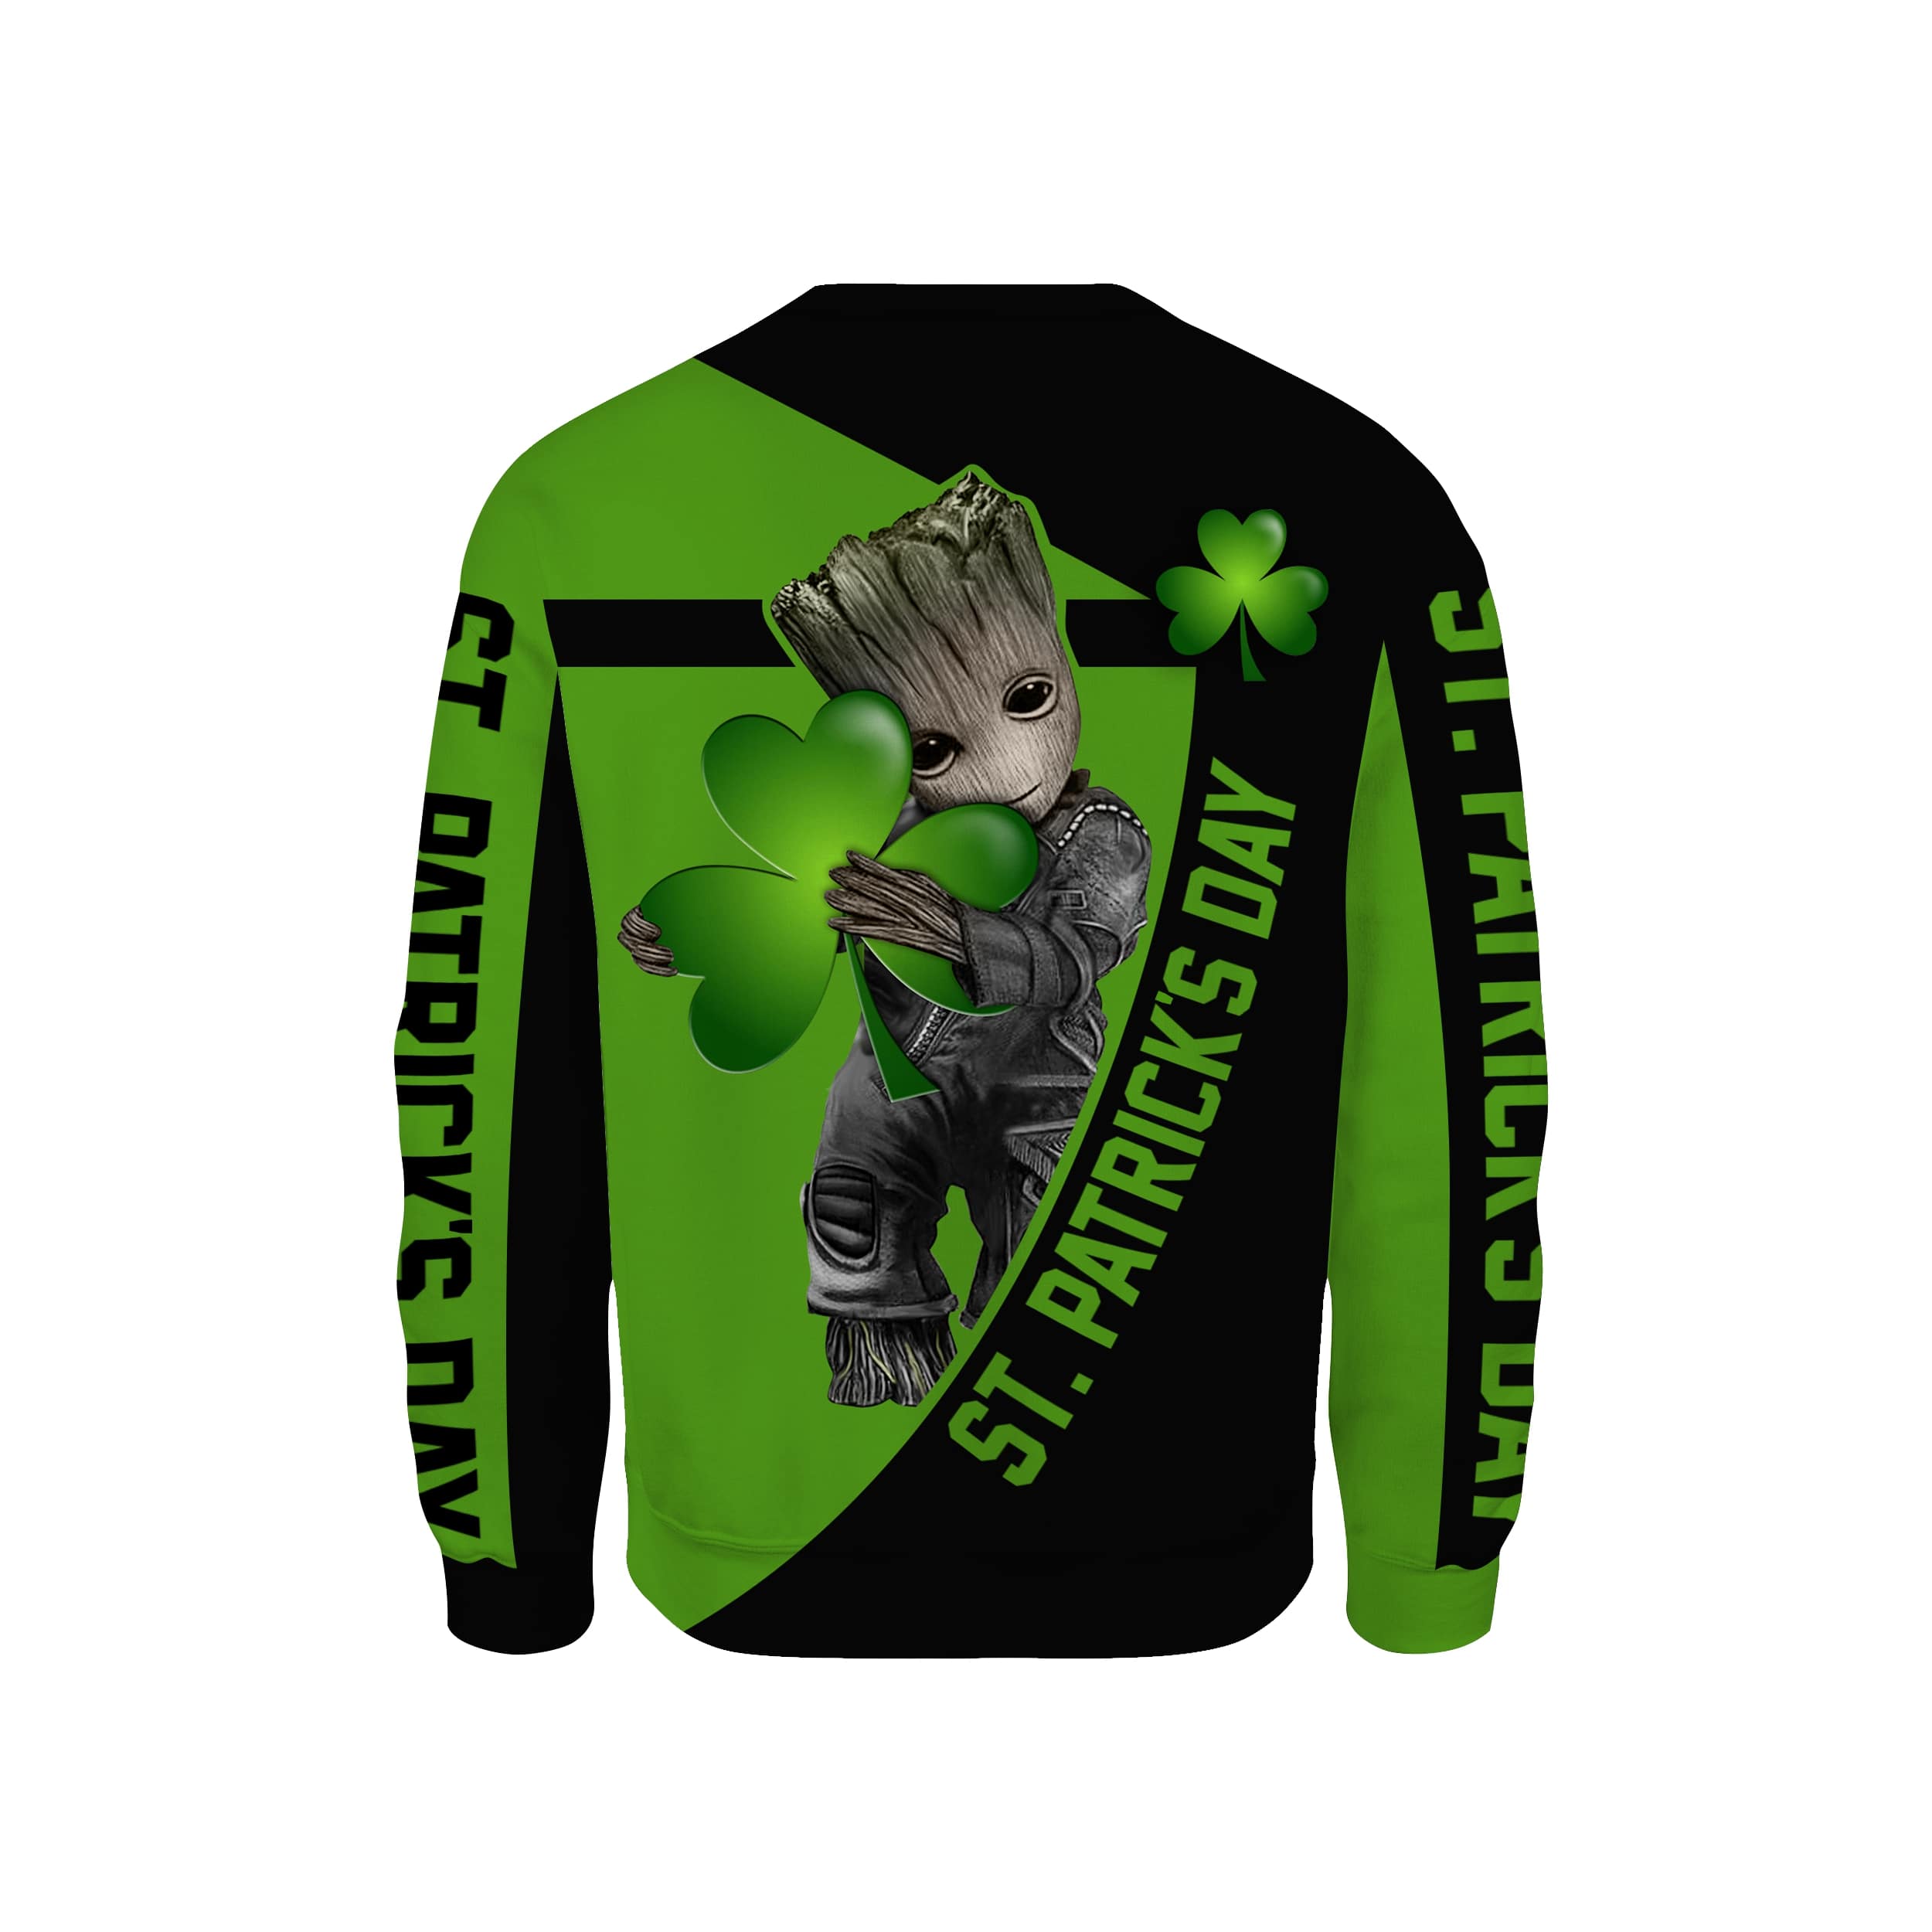 Irish saint patrick's day groot full printing sweatshirt - back